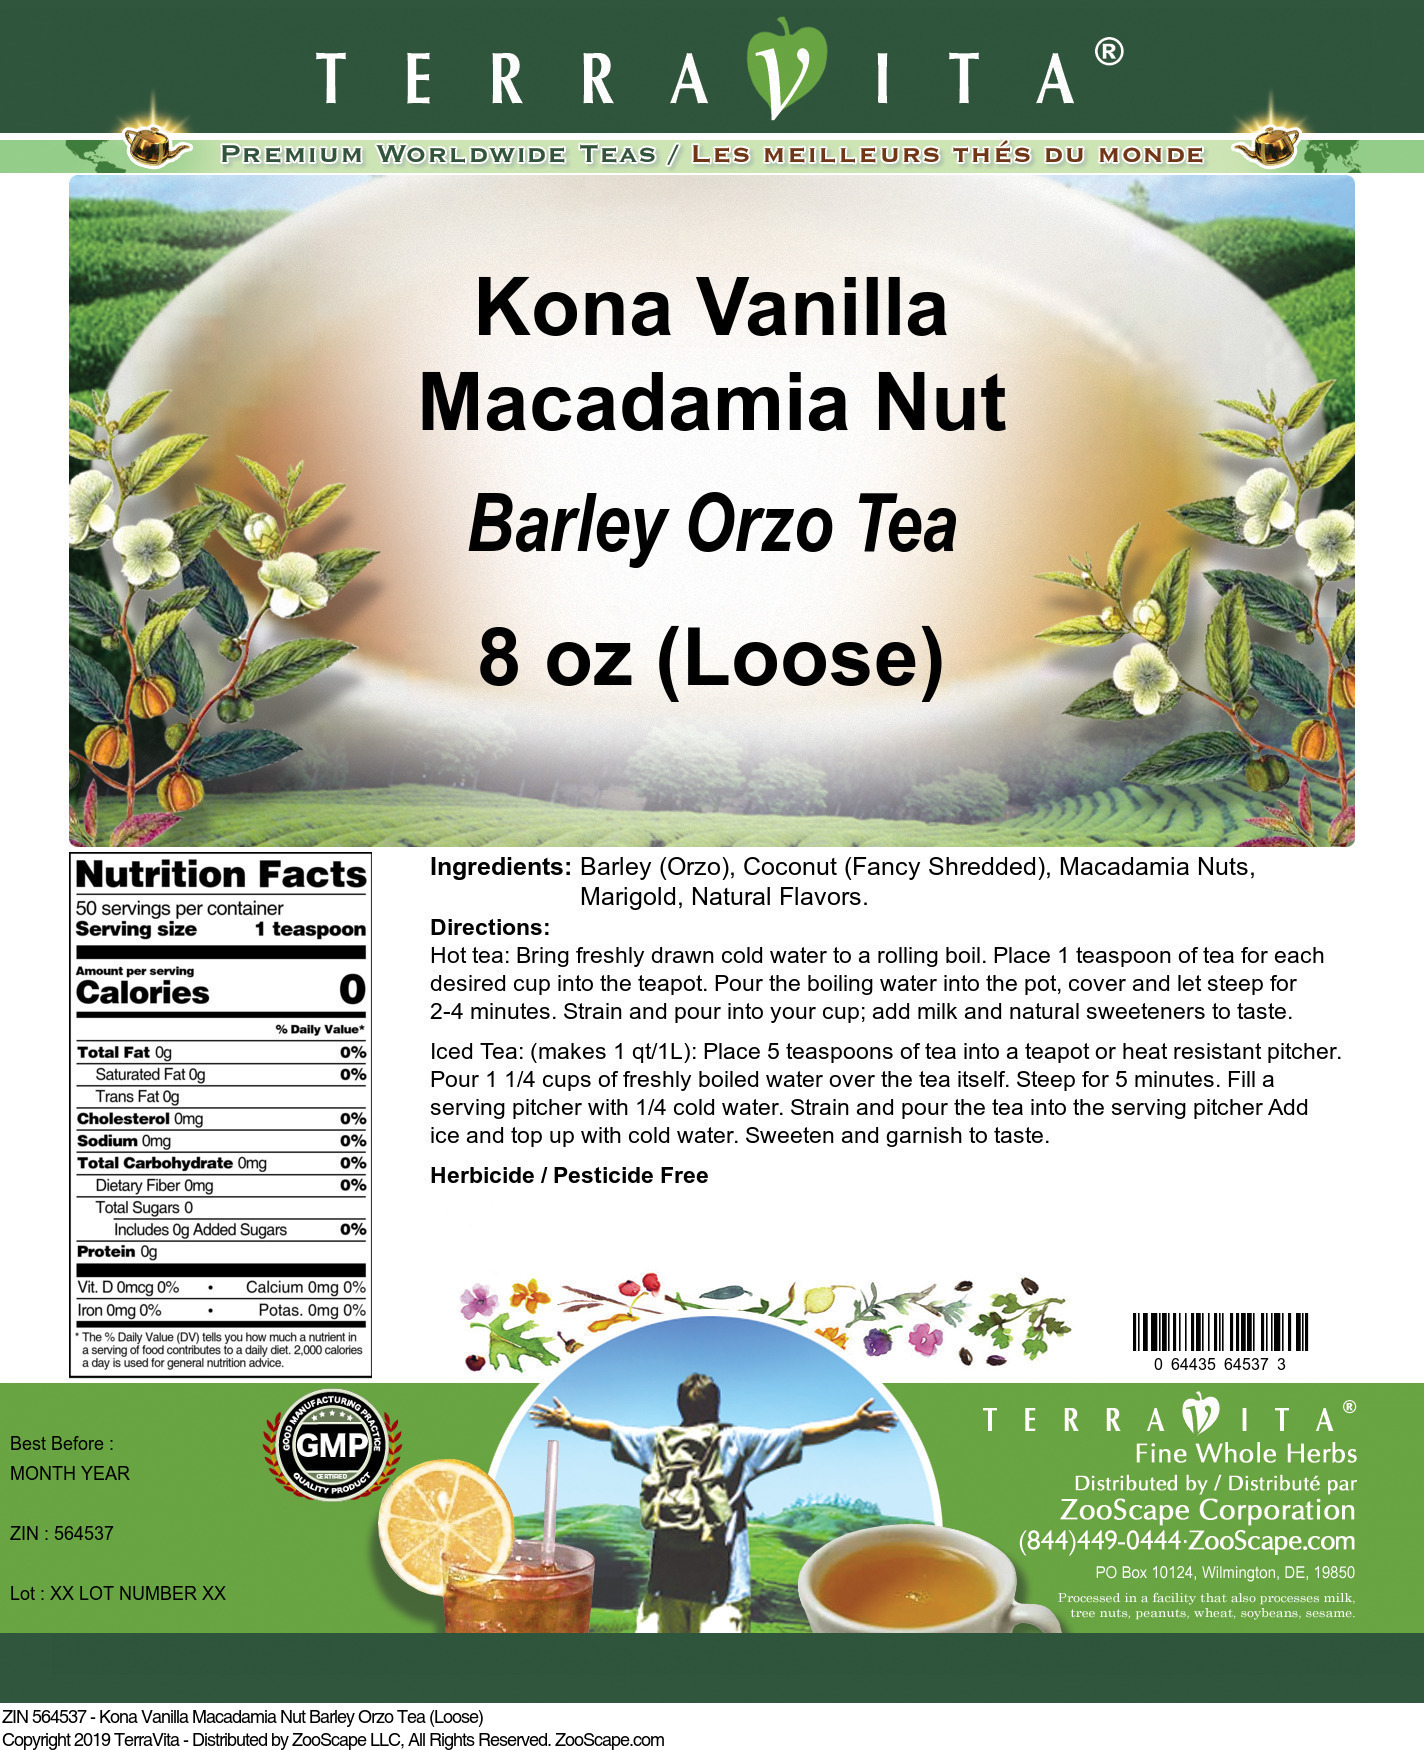 Kona Vanilla Macadamia Nut Barley Orzo Tea (Loose) - Label